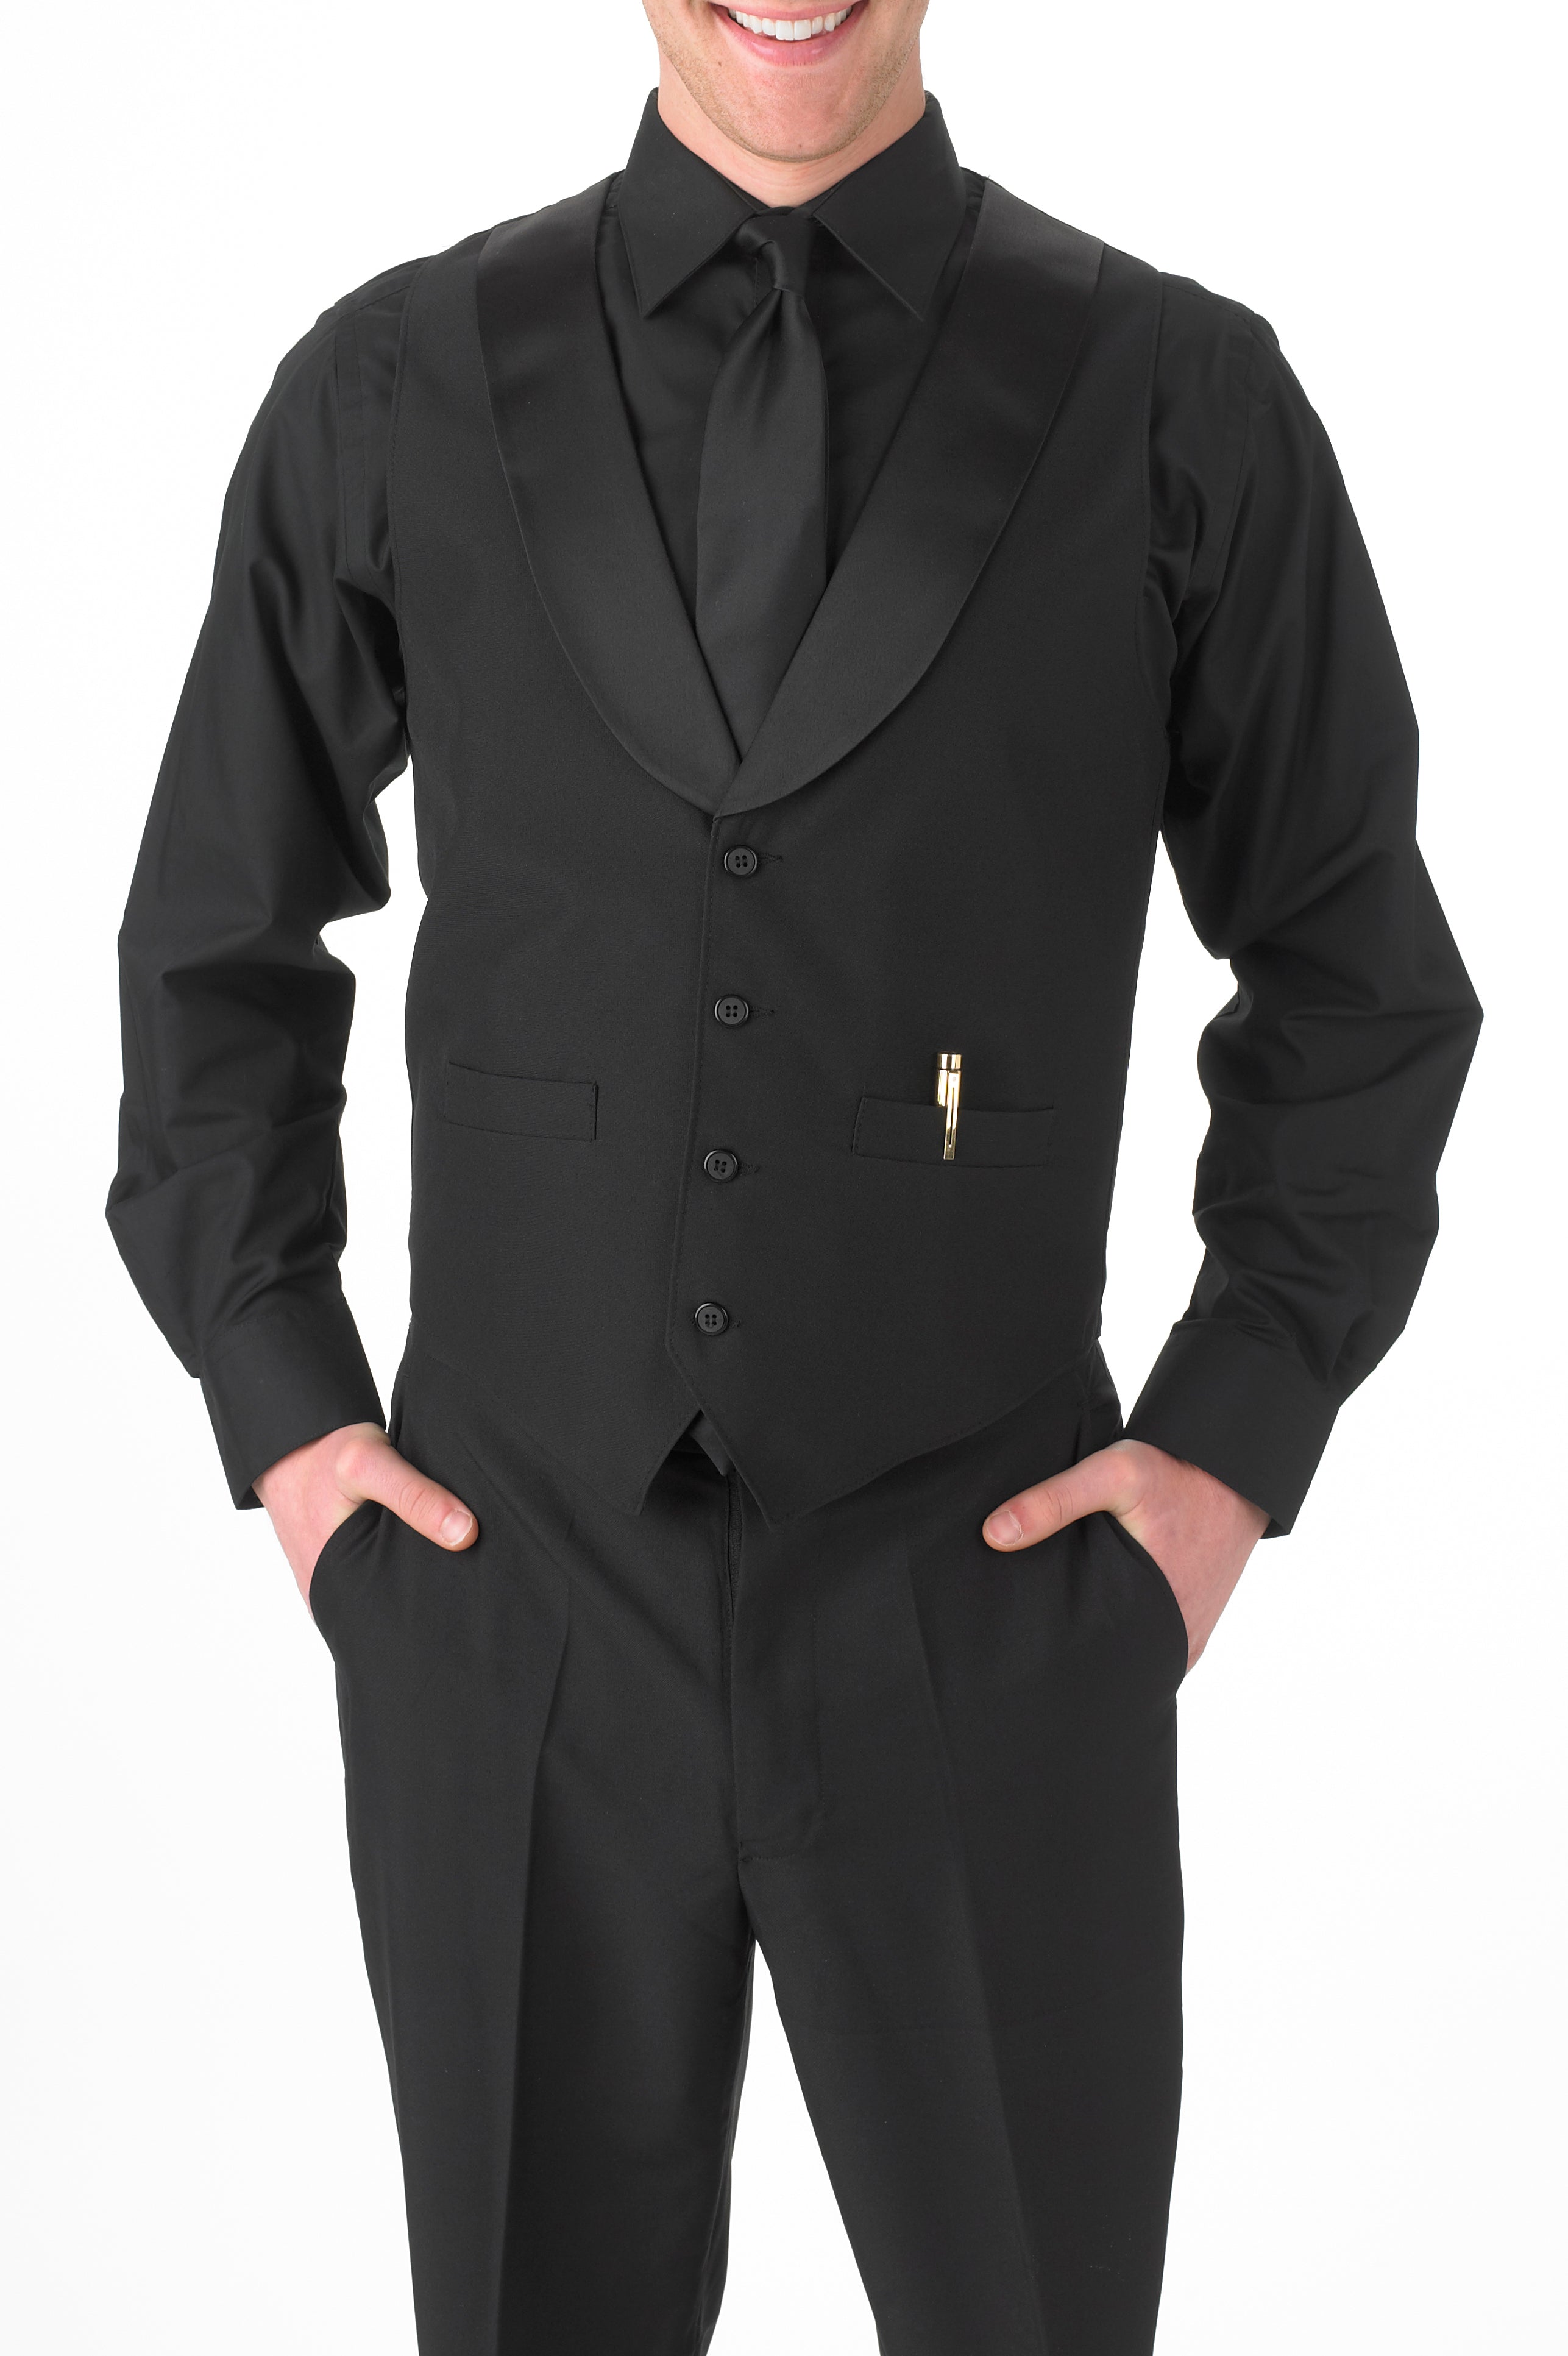 Solid Black Dress Vest, Formal Mens Suit and Tuxedo Vest in Black Satin